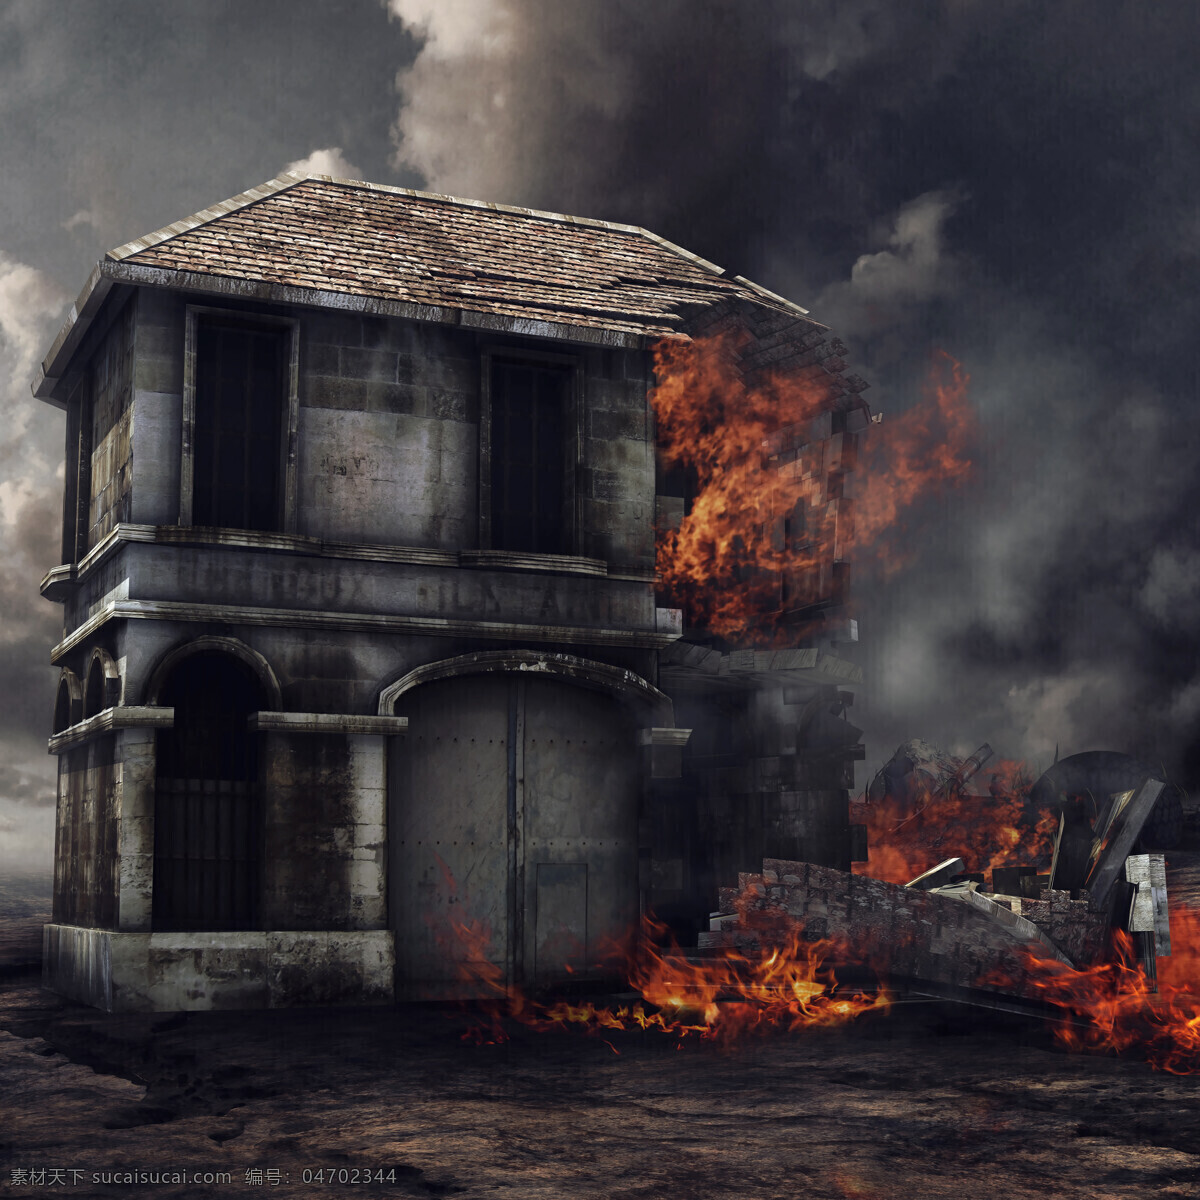 着火 房屋 着火的房屋 火灾 火焰 烟雾 大火 燃烧 房子 垮塌 其他类别 生活百科